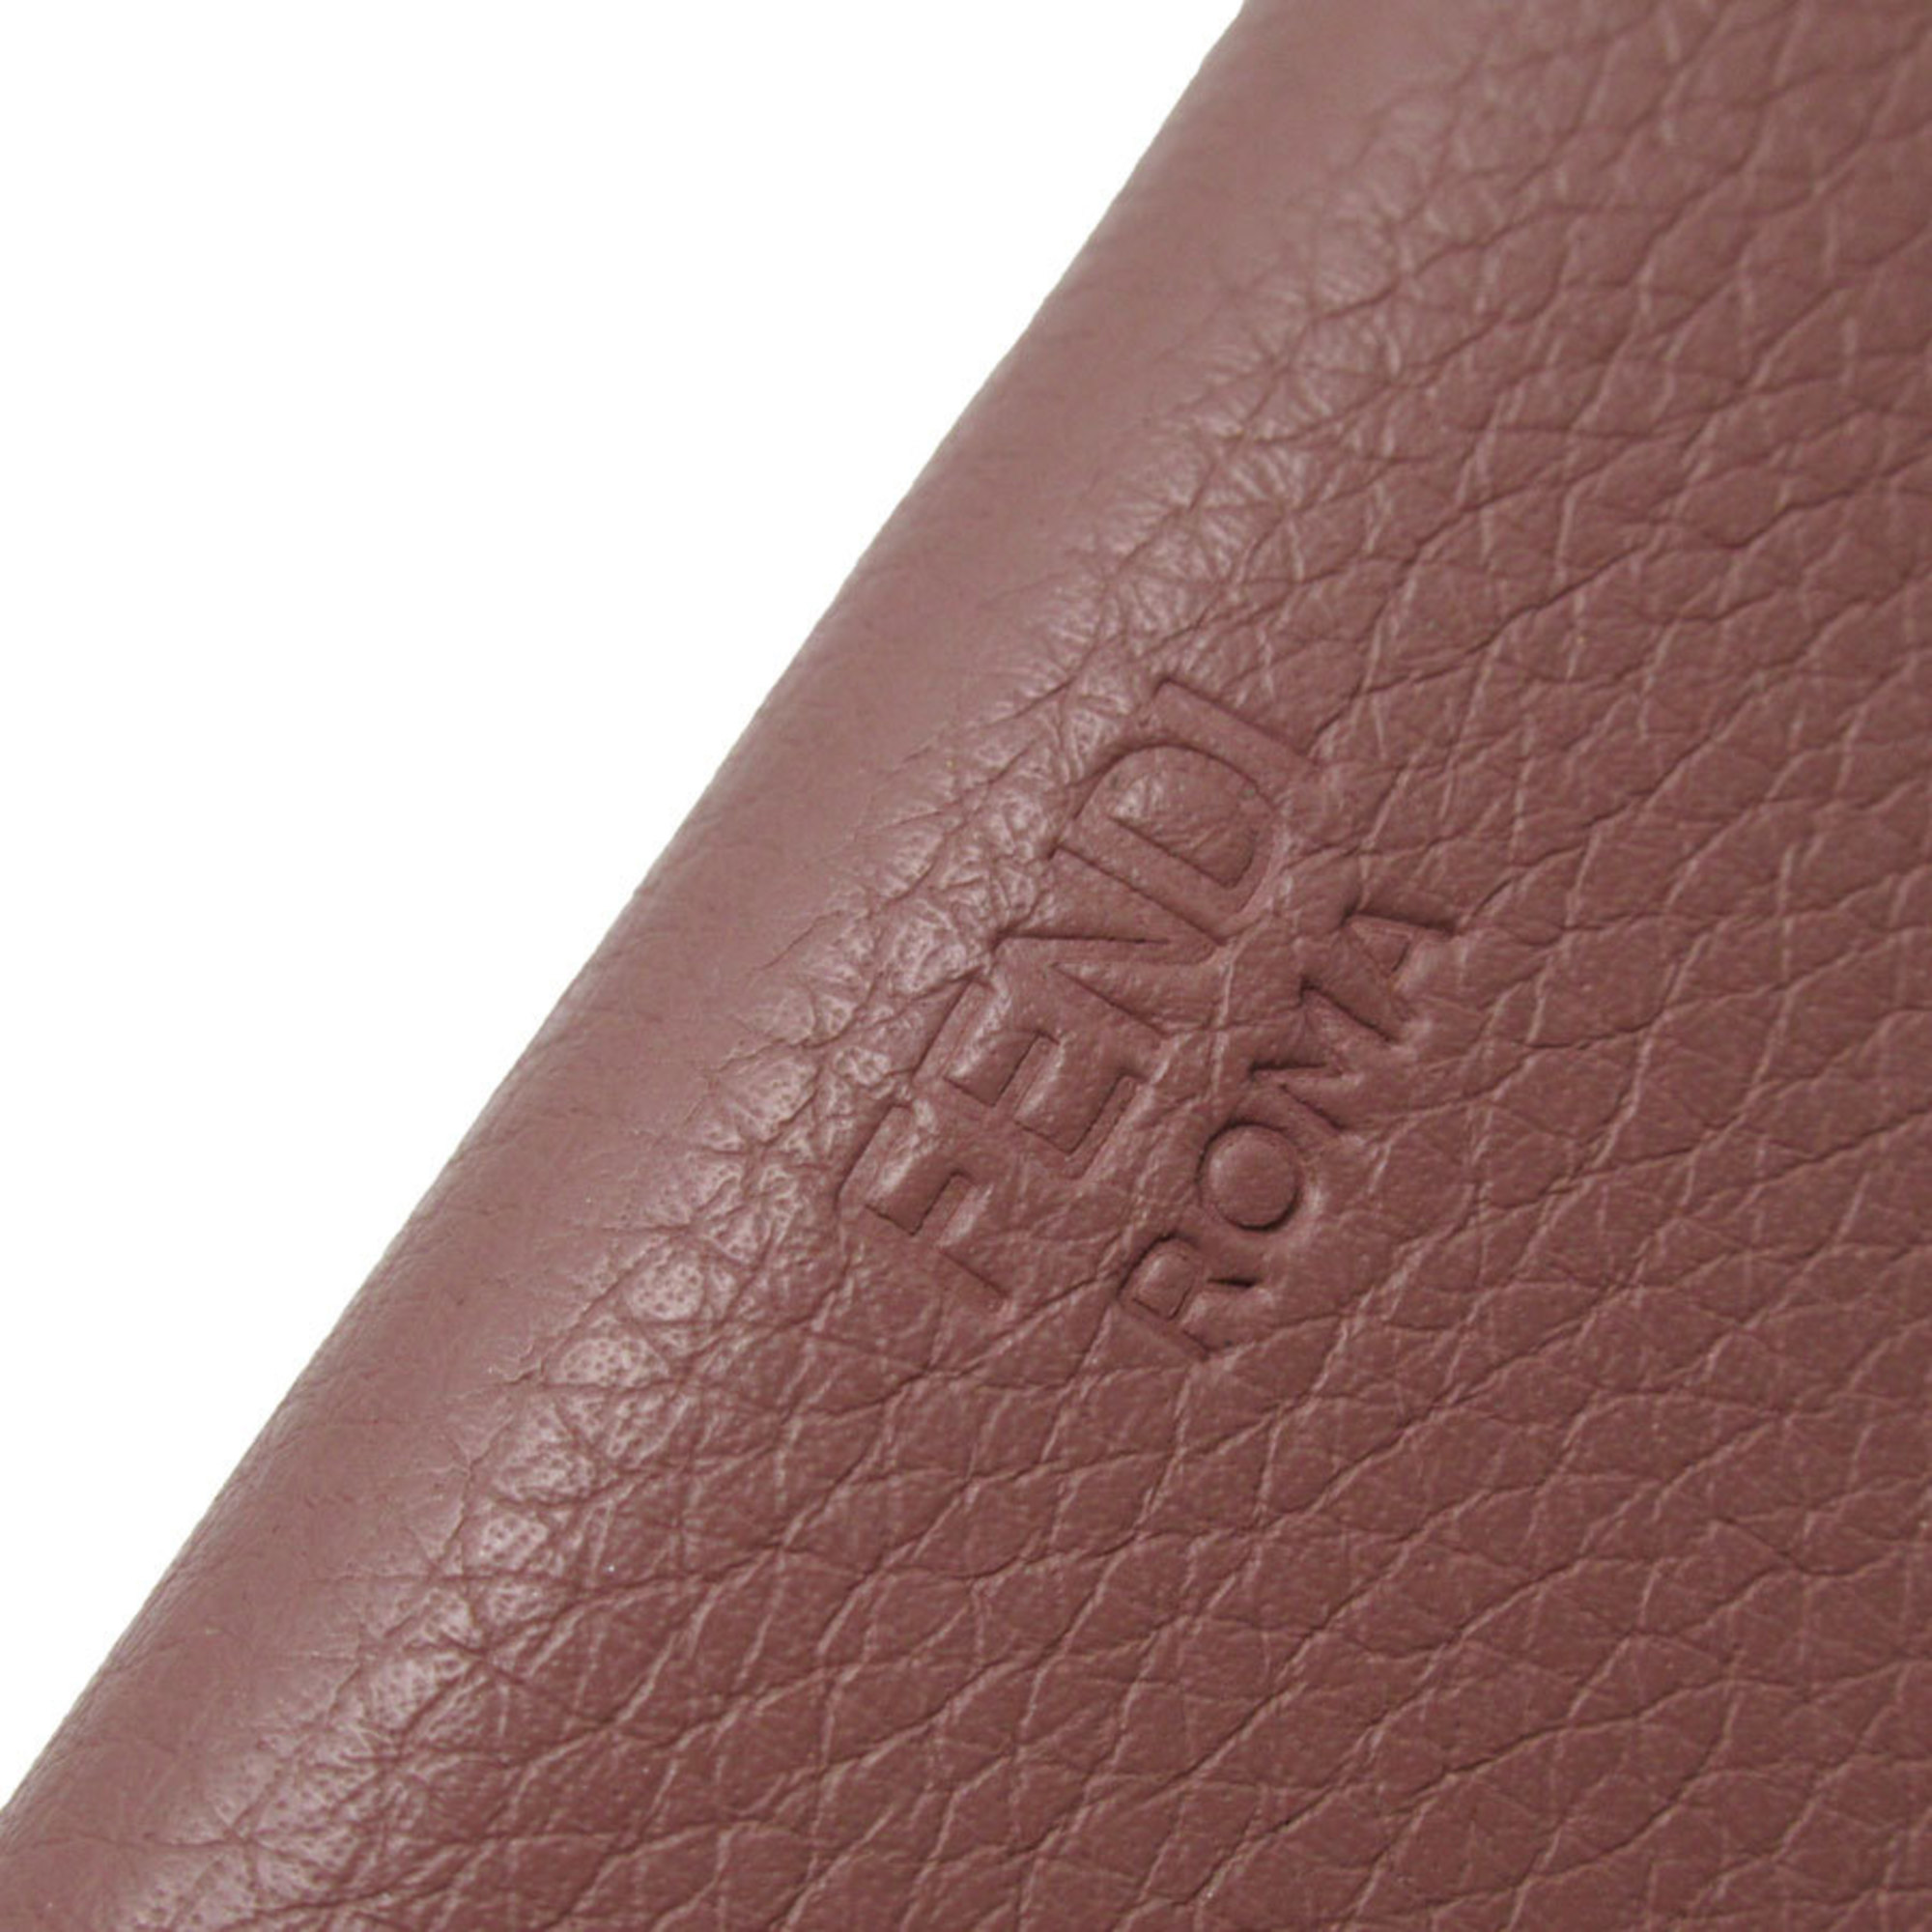 FENDI Tri-fold Wallet Leather Pink Greige Gold Women's w0176a